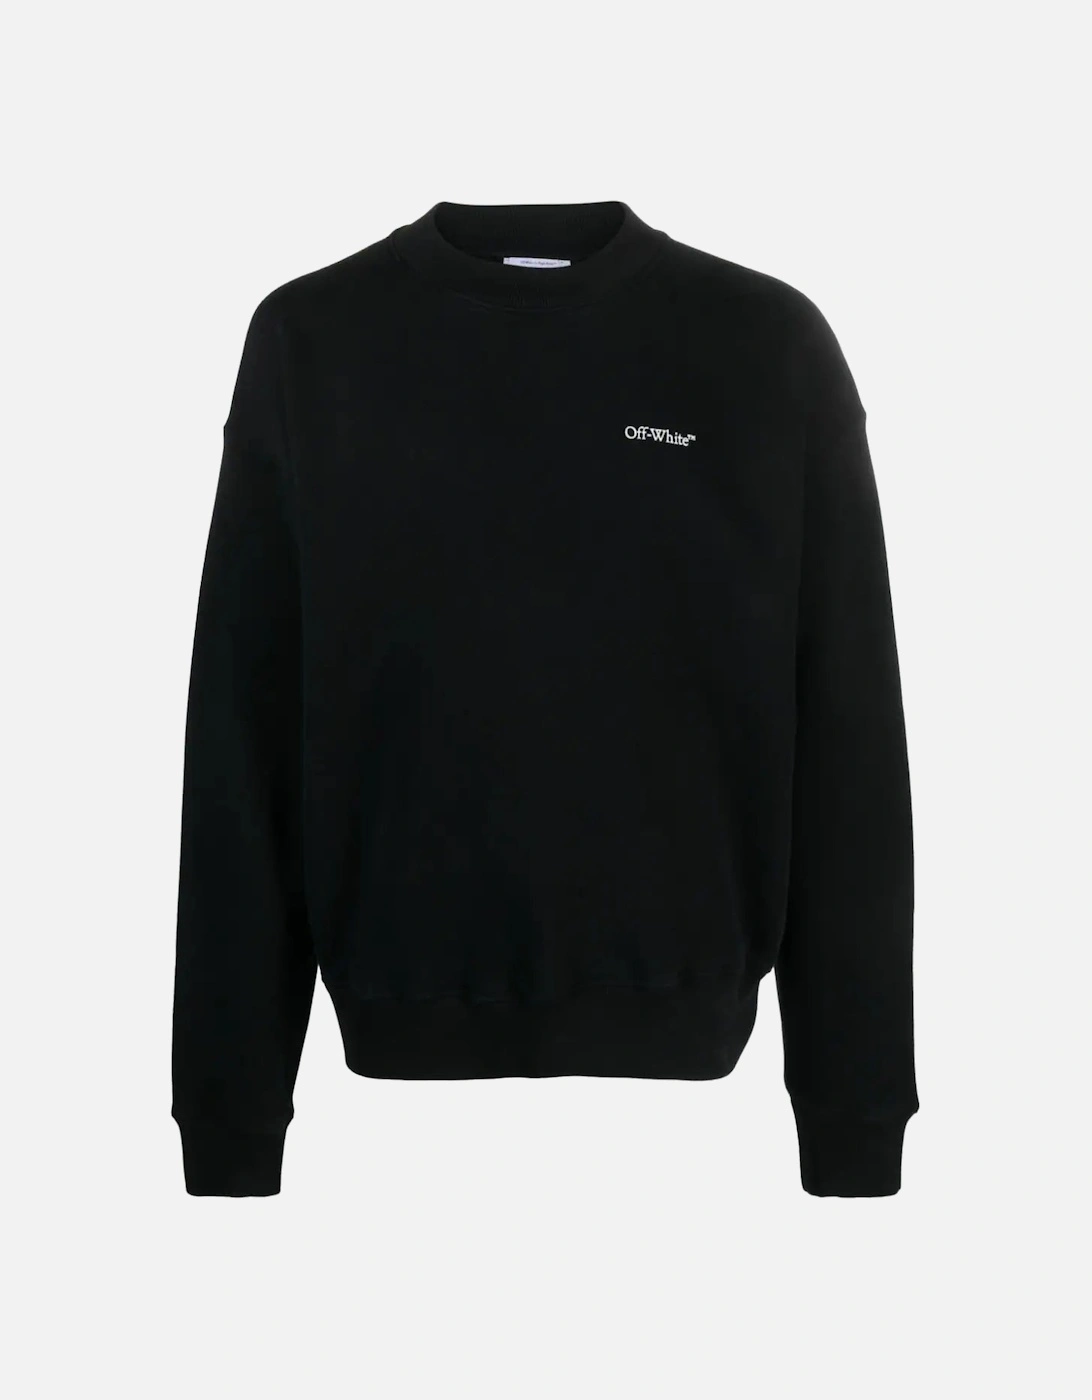 Lunar Arrow Skate Sweatshirt in Black